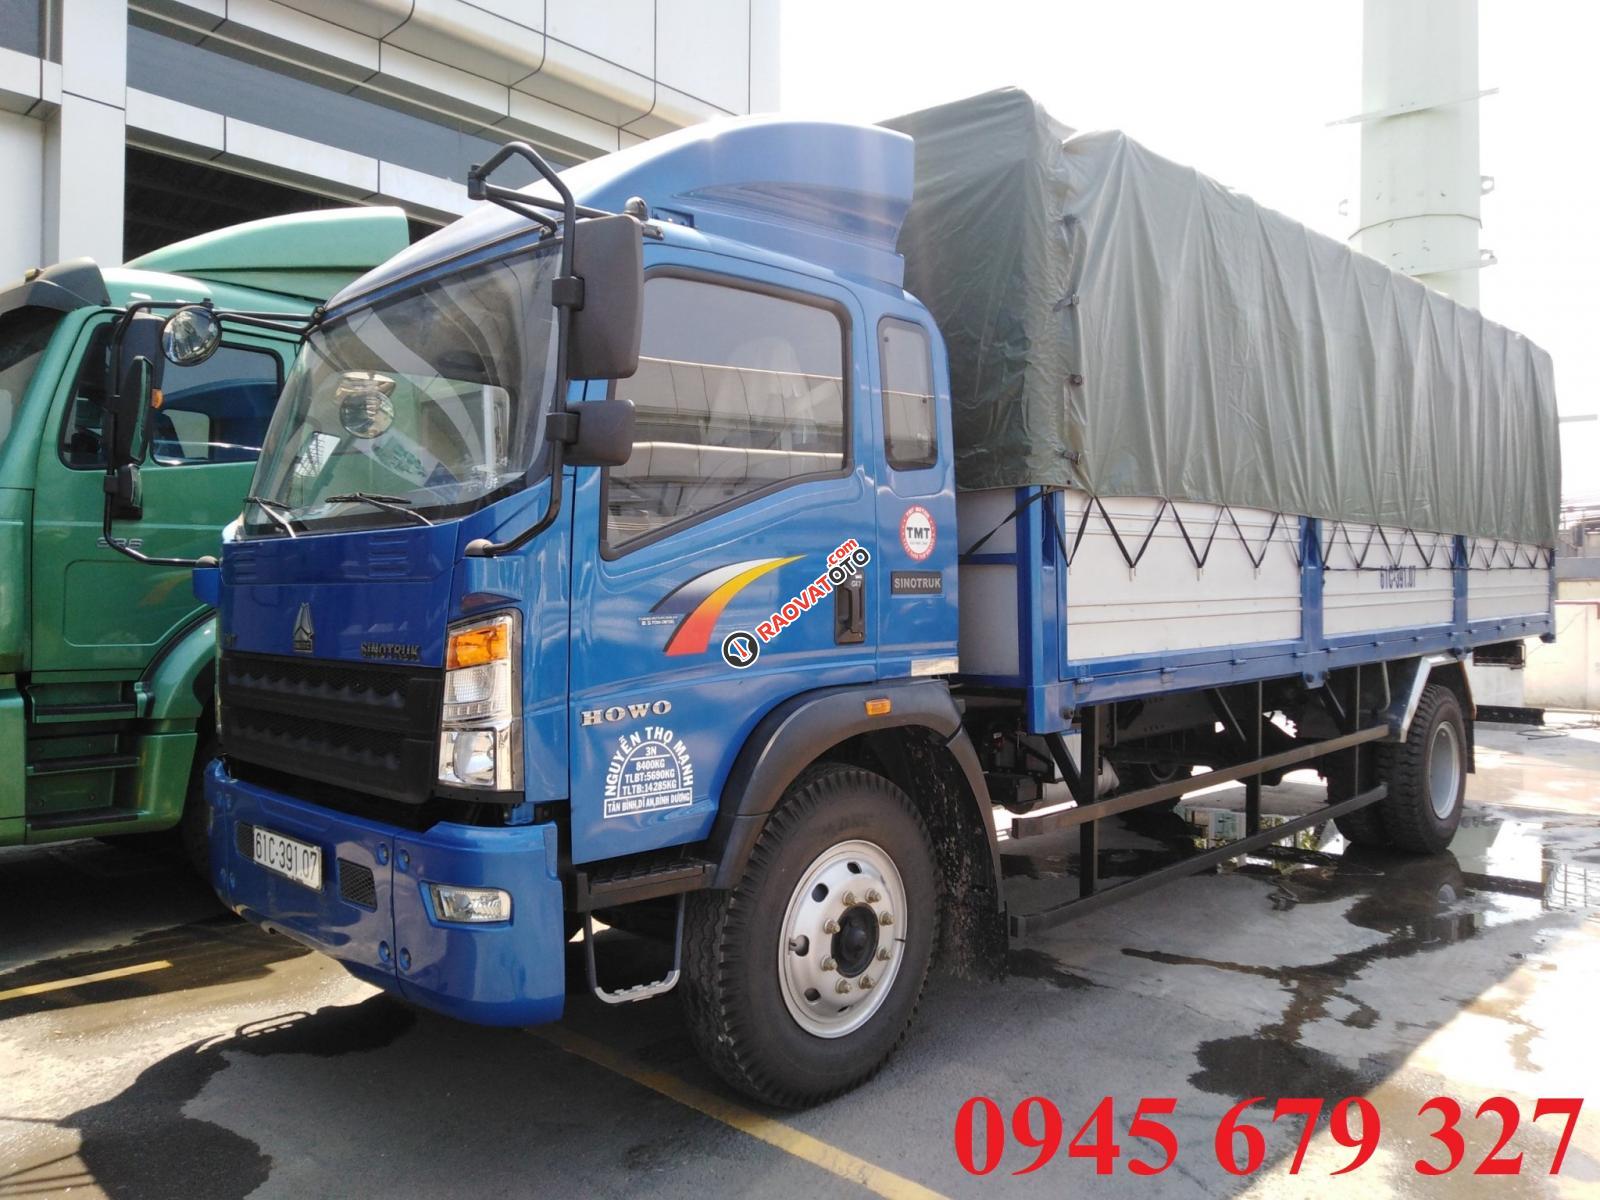 Thanh lý xe tải Howo 8t5 thùng 7m ga cơ, trả góp 190 triệu nhận xe-2